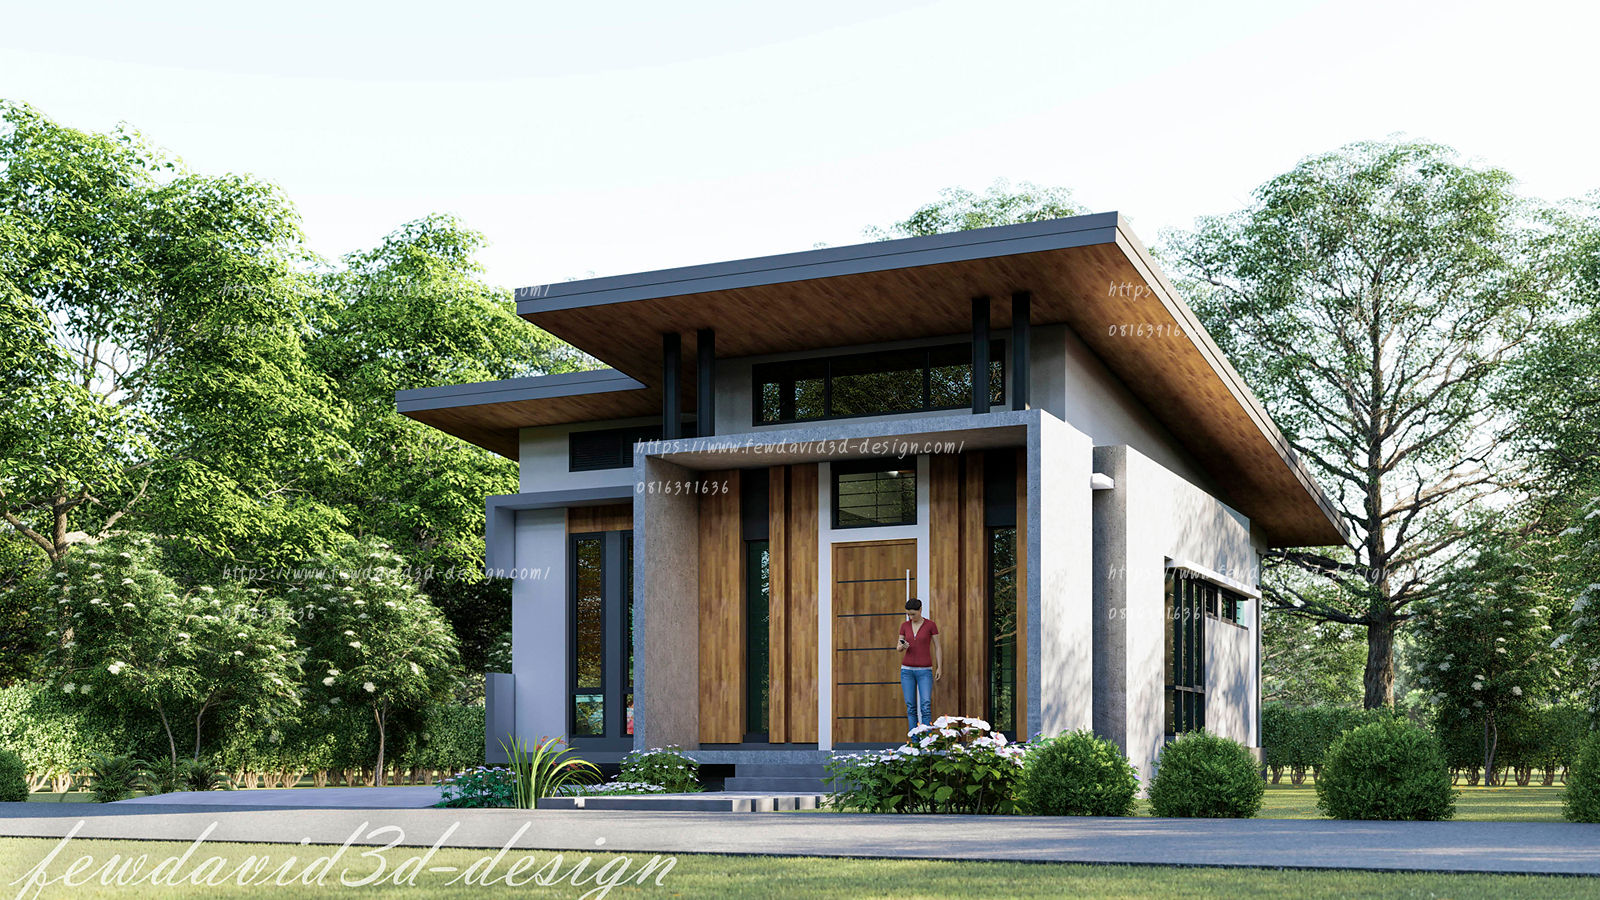 บ้านพักอาศัยชั้นเดียว อ.เมือง จ.ลพบุรี คุณดารารัตน์ฯ, fewdavid3d-design fewdavid3d-design Single family home